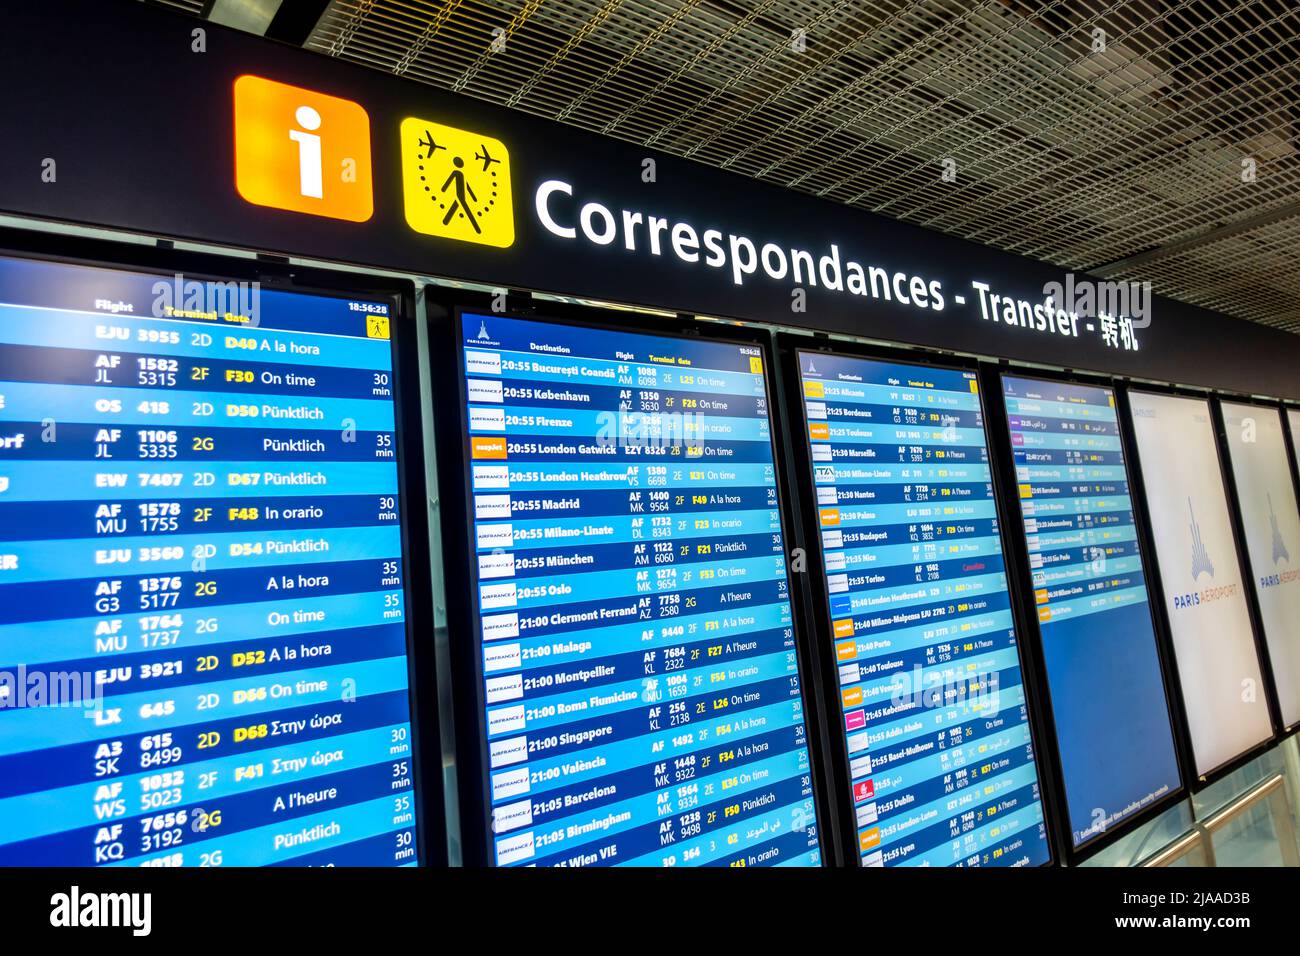 Traslados - Vuelos conectados - Salidas - Vuelos operados por Air France Timetable Tableau, Aeropuerto de París, CDG, Francia Foto de stock